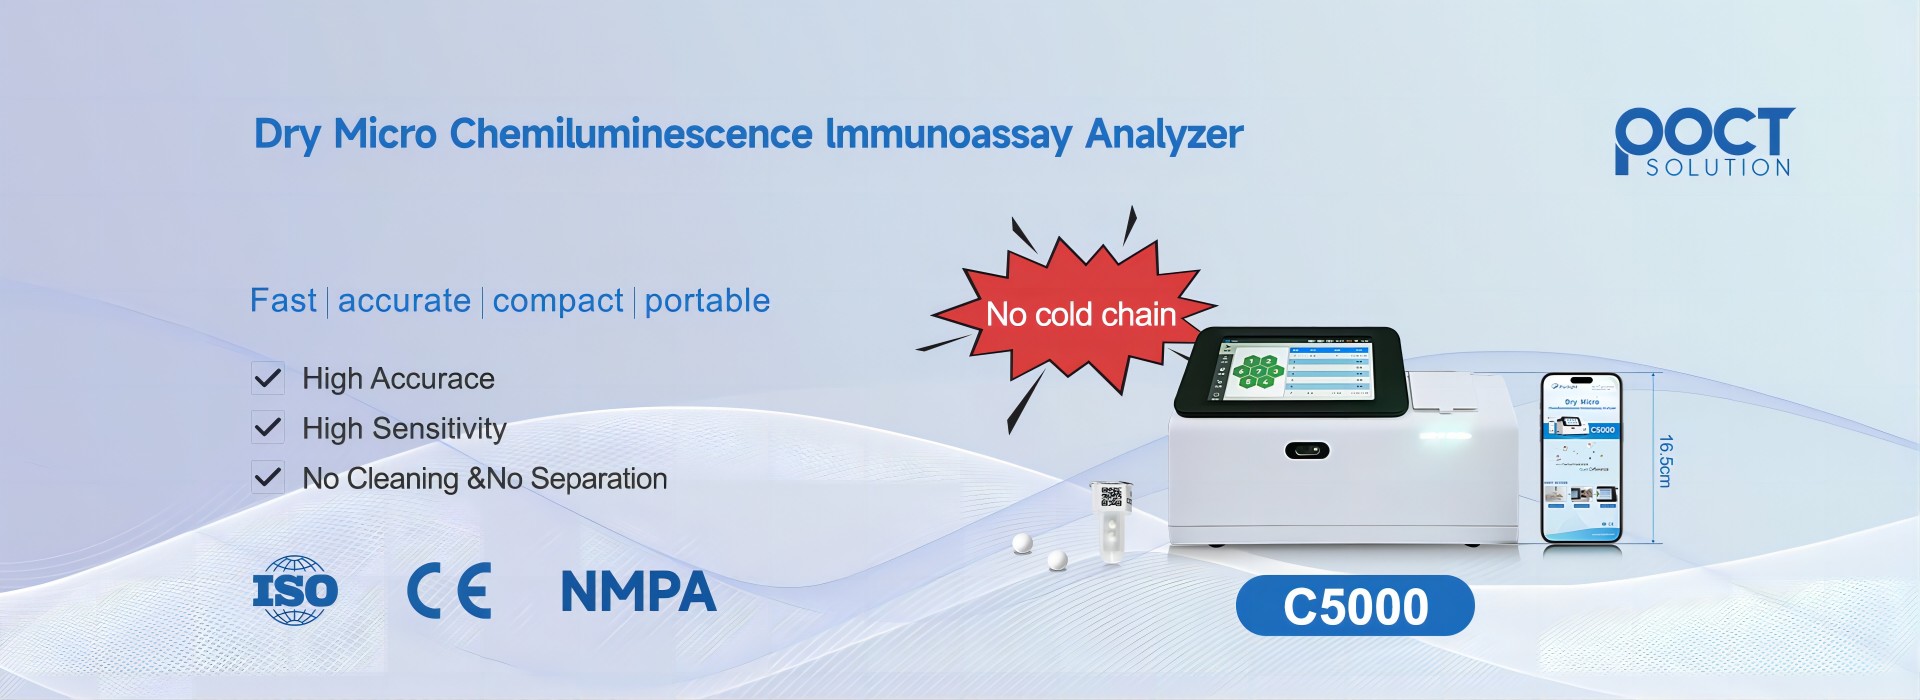 化学発光免疫分析装置は何に使用されますか?
        